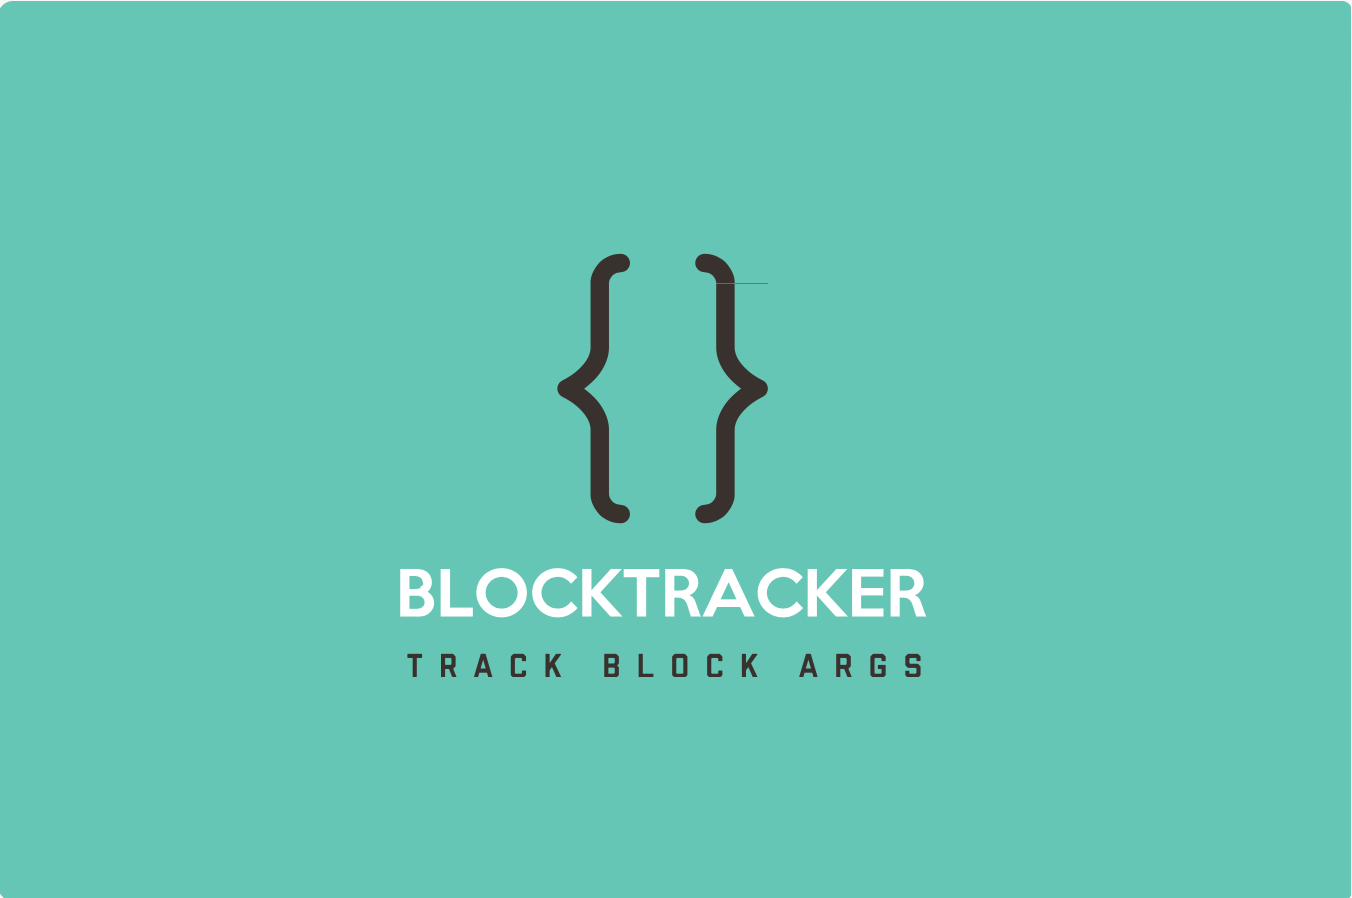 BlockTracker